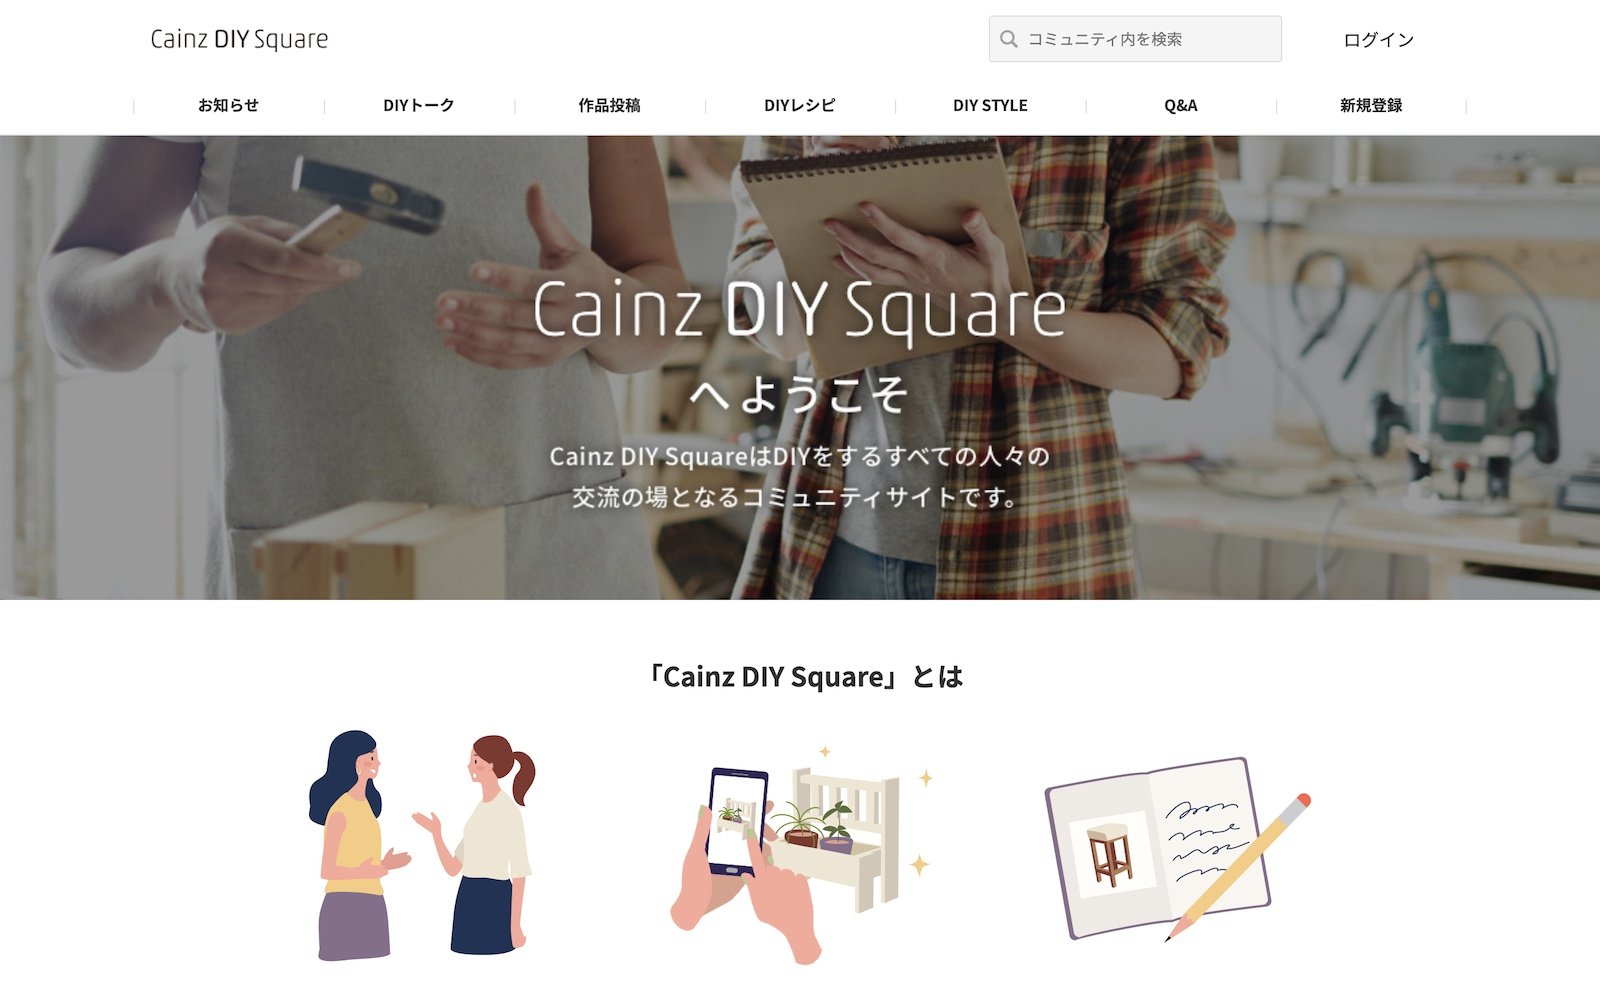 カインズが運営する「Cainz DIY Square」。同コミュニティでは8000件以上のDIY作品が投稿されており、DIY好きのユーザー同士が交流する場所になっている